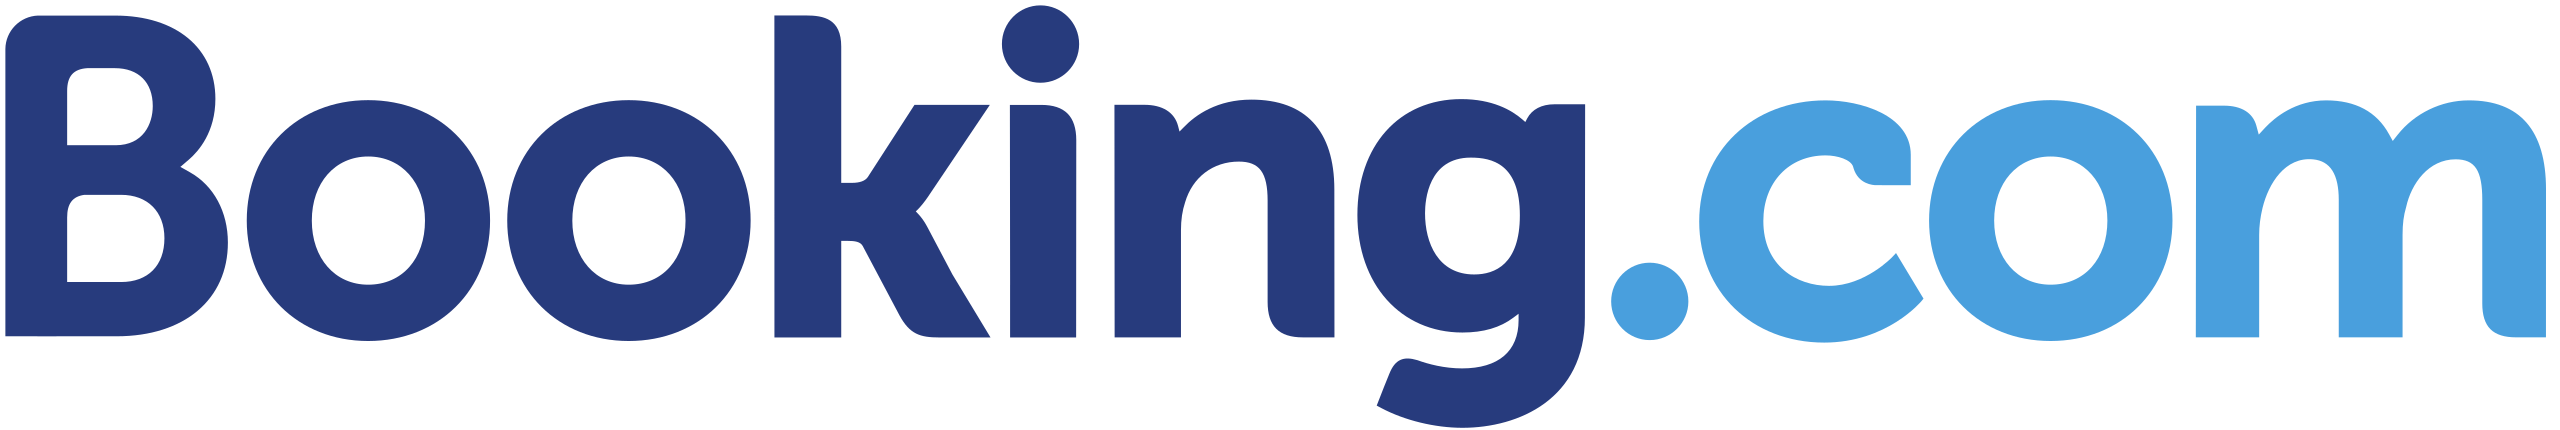 bookingcom_logo